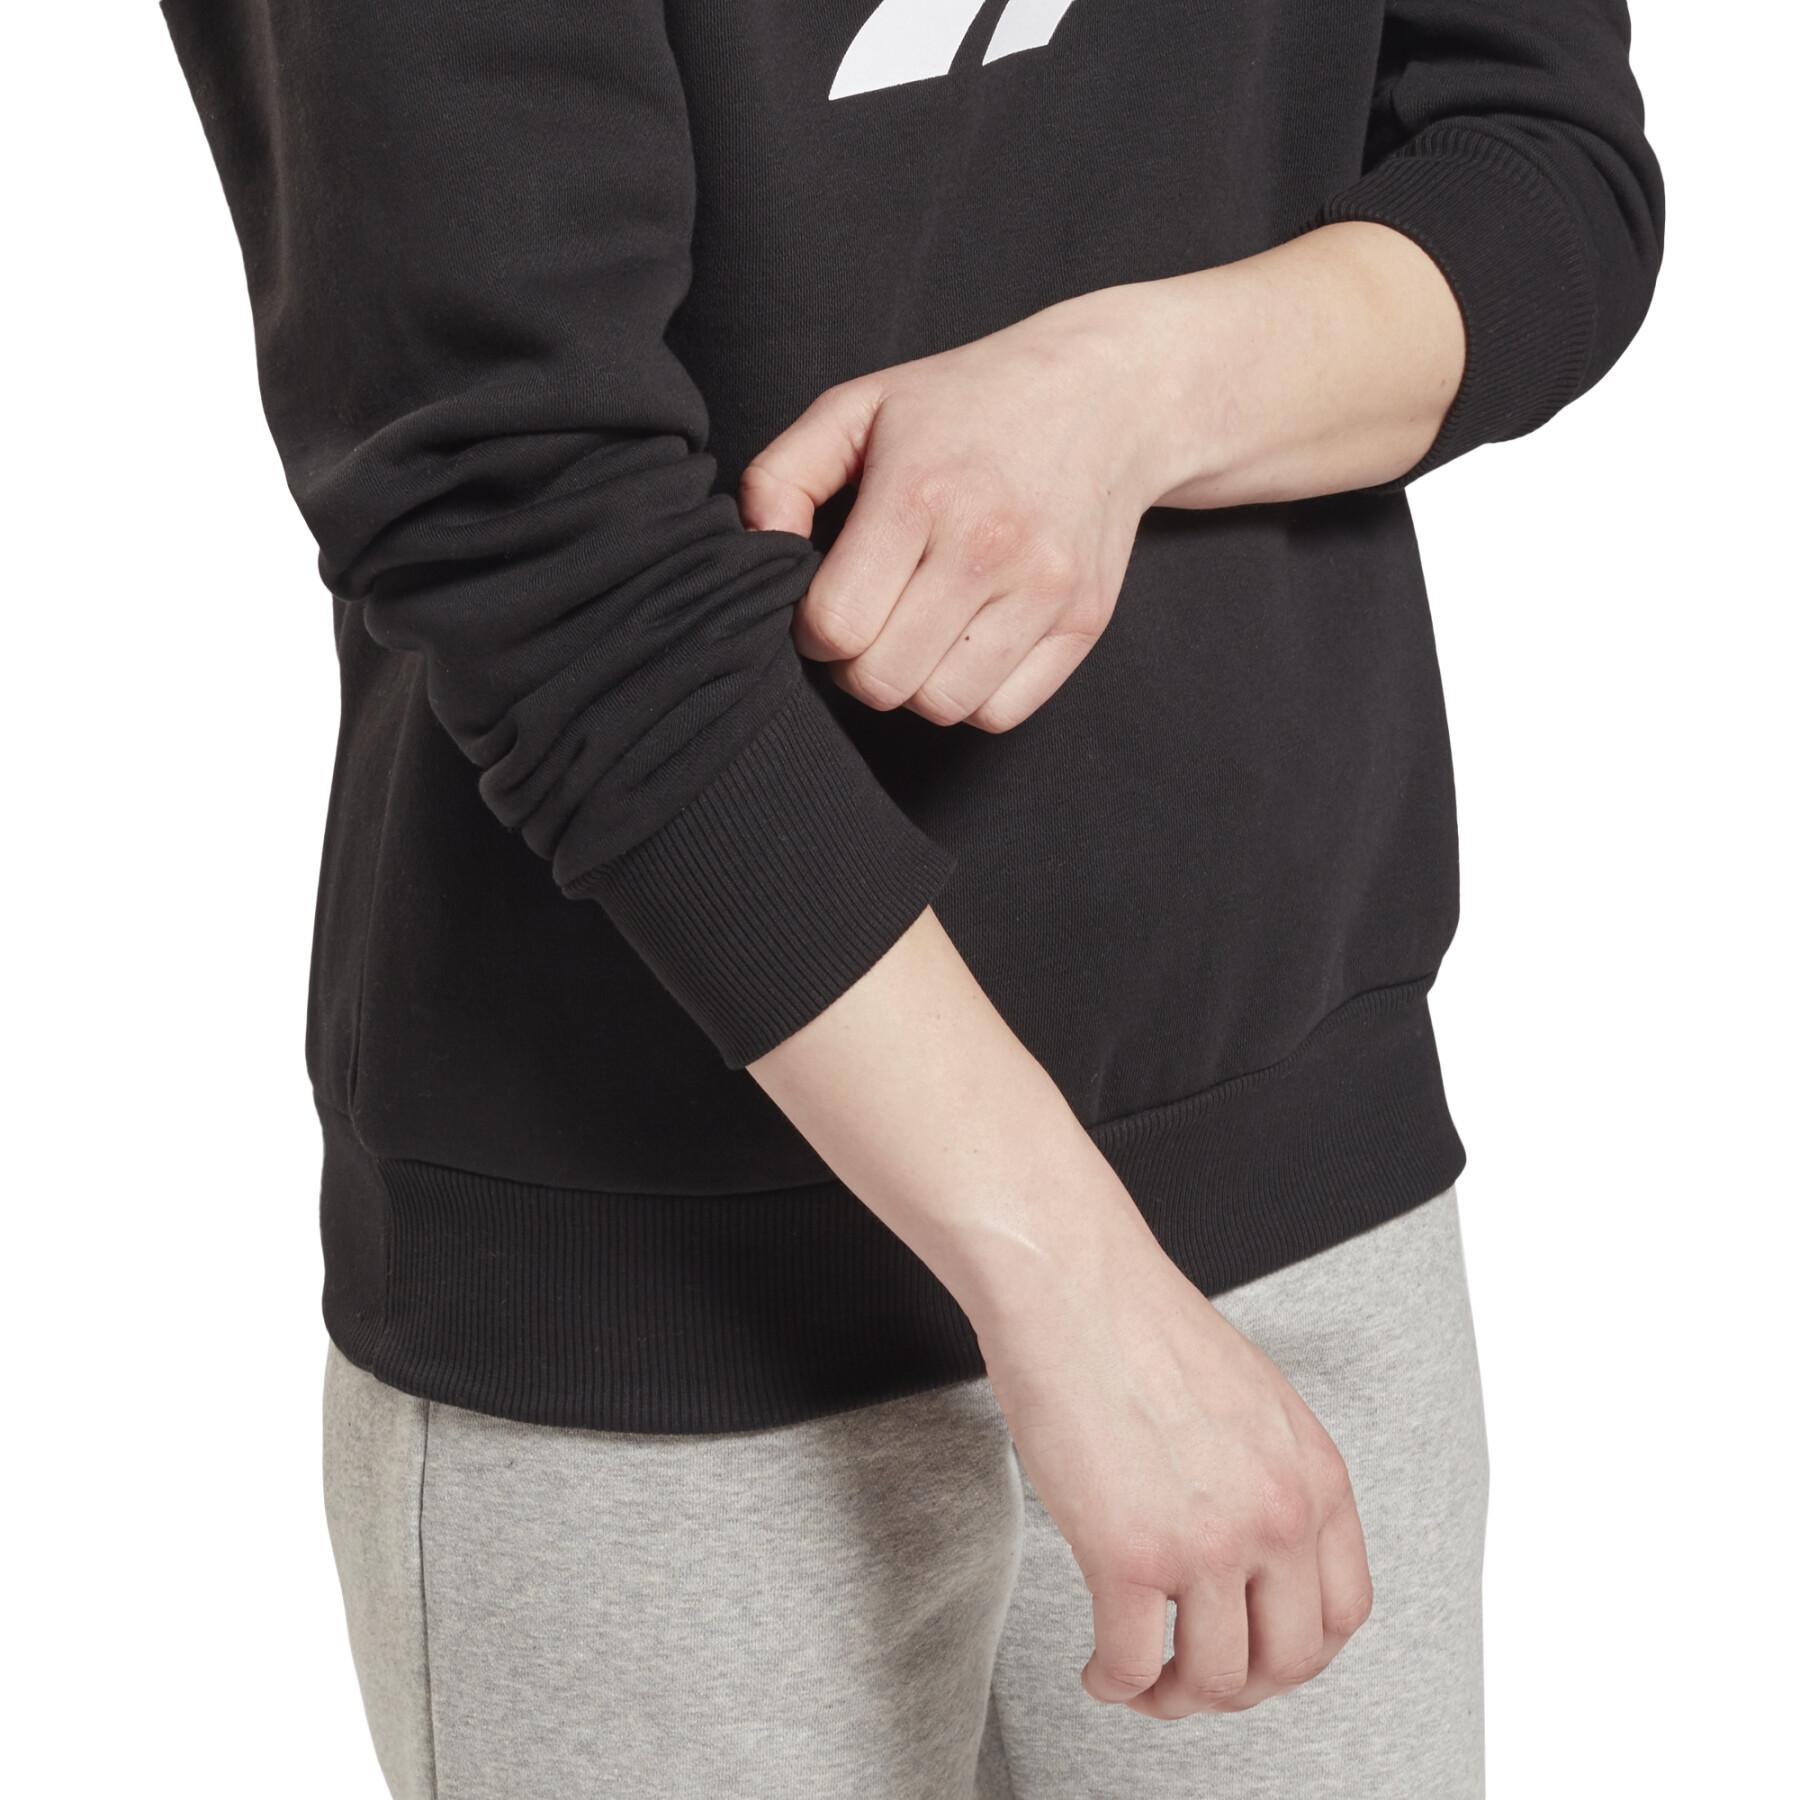 Sweatshirt vrouw Reebok Identity Logo Fleece